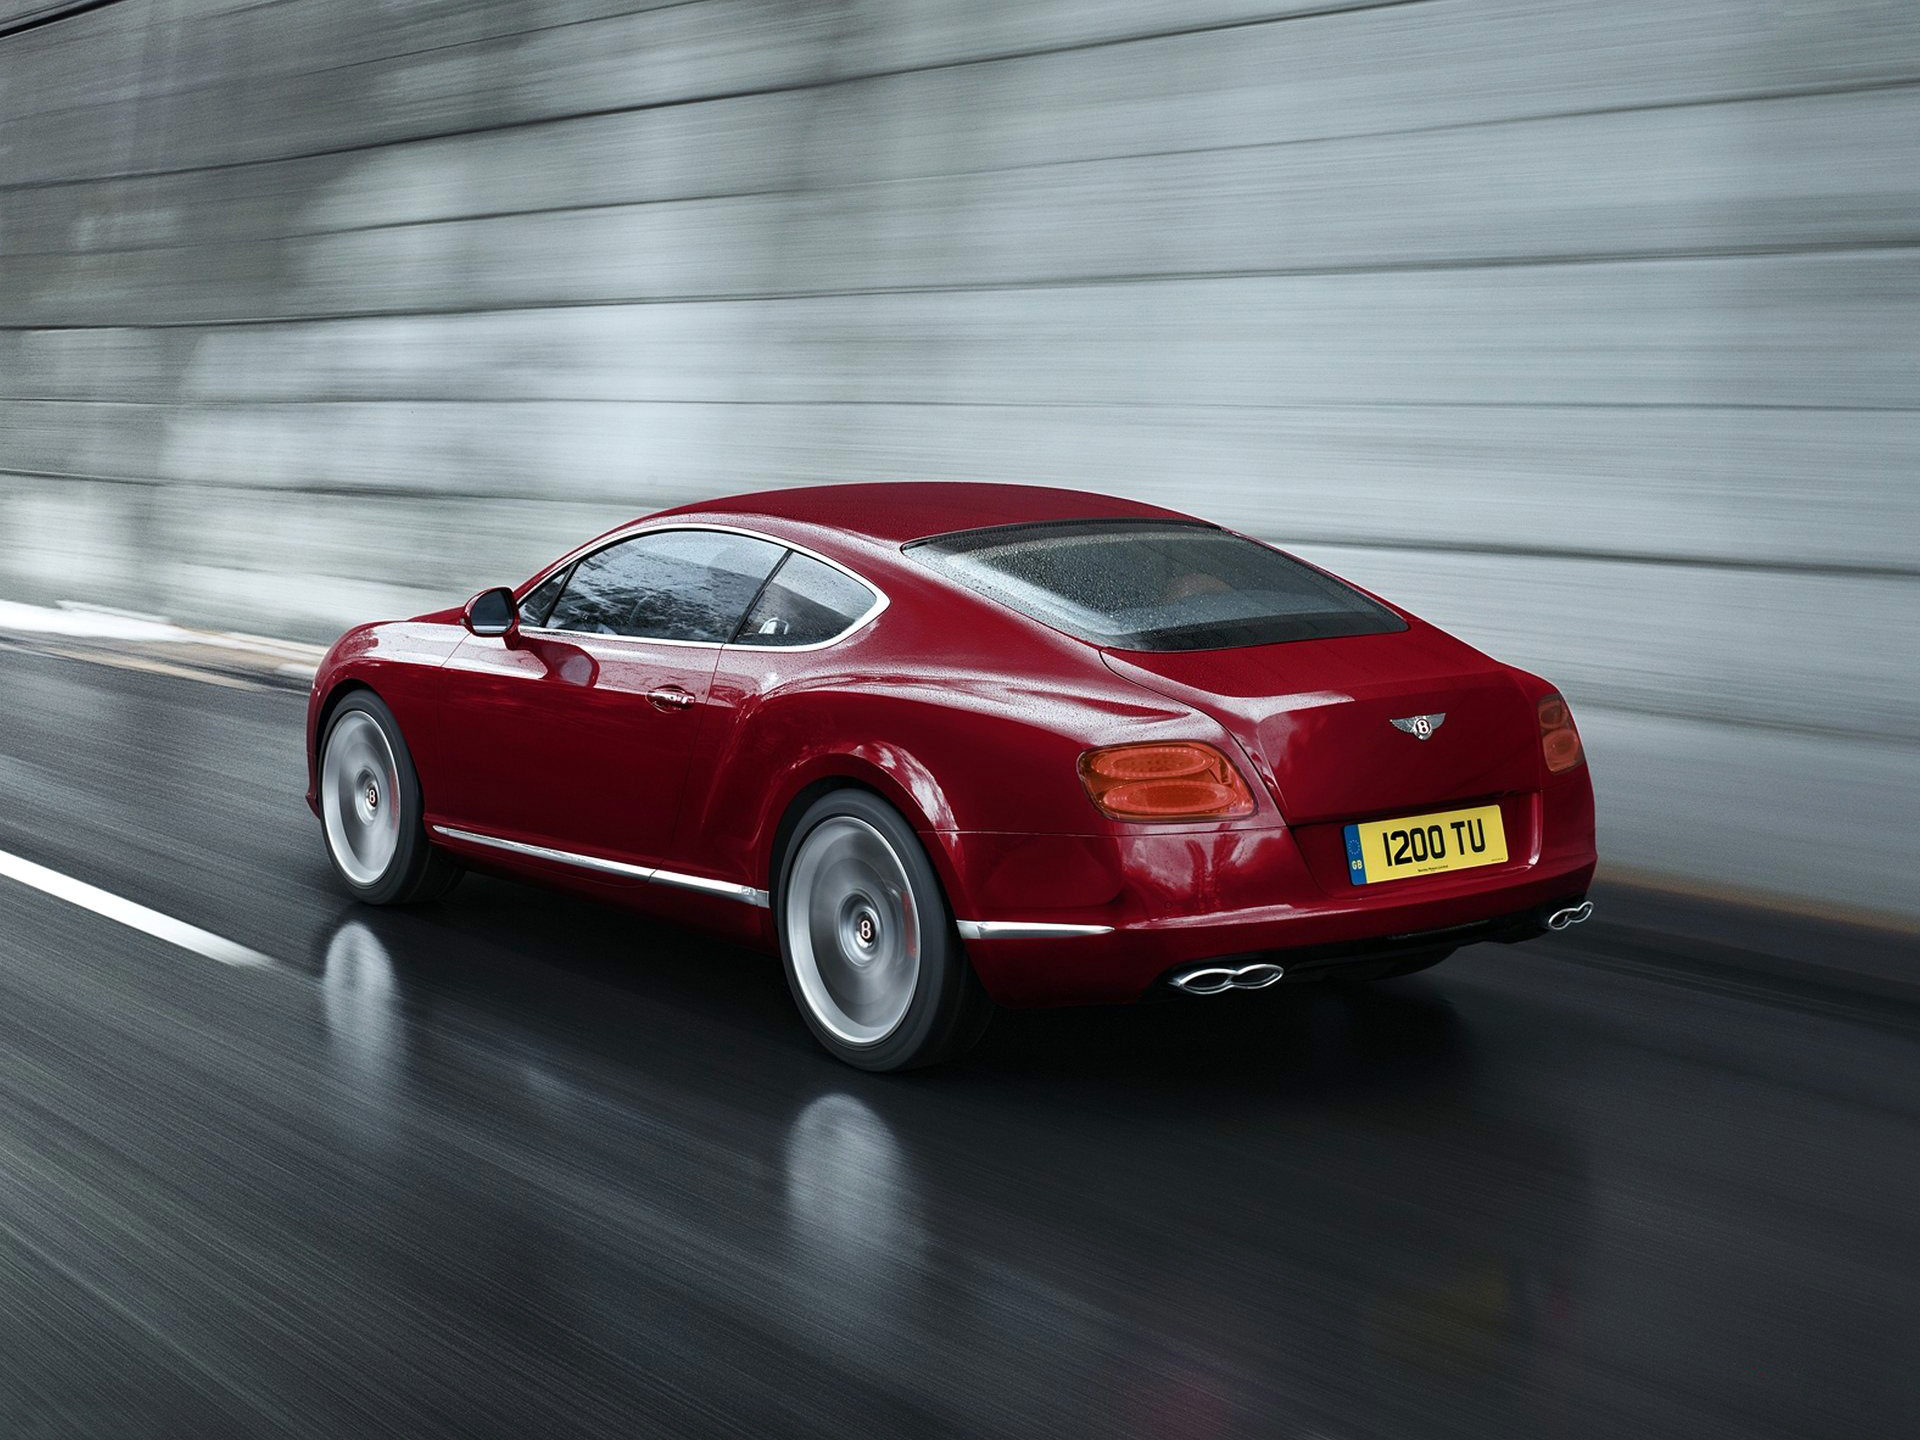 Descarga gratuita de fondo de pantalla para móvil de Bentley Continental Gt V8, Bentley, Vehículos.